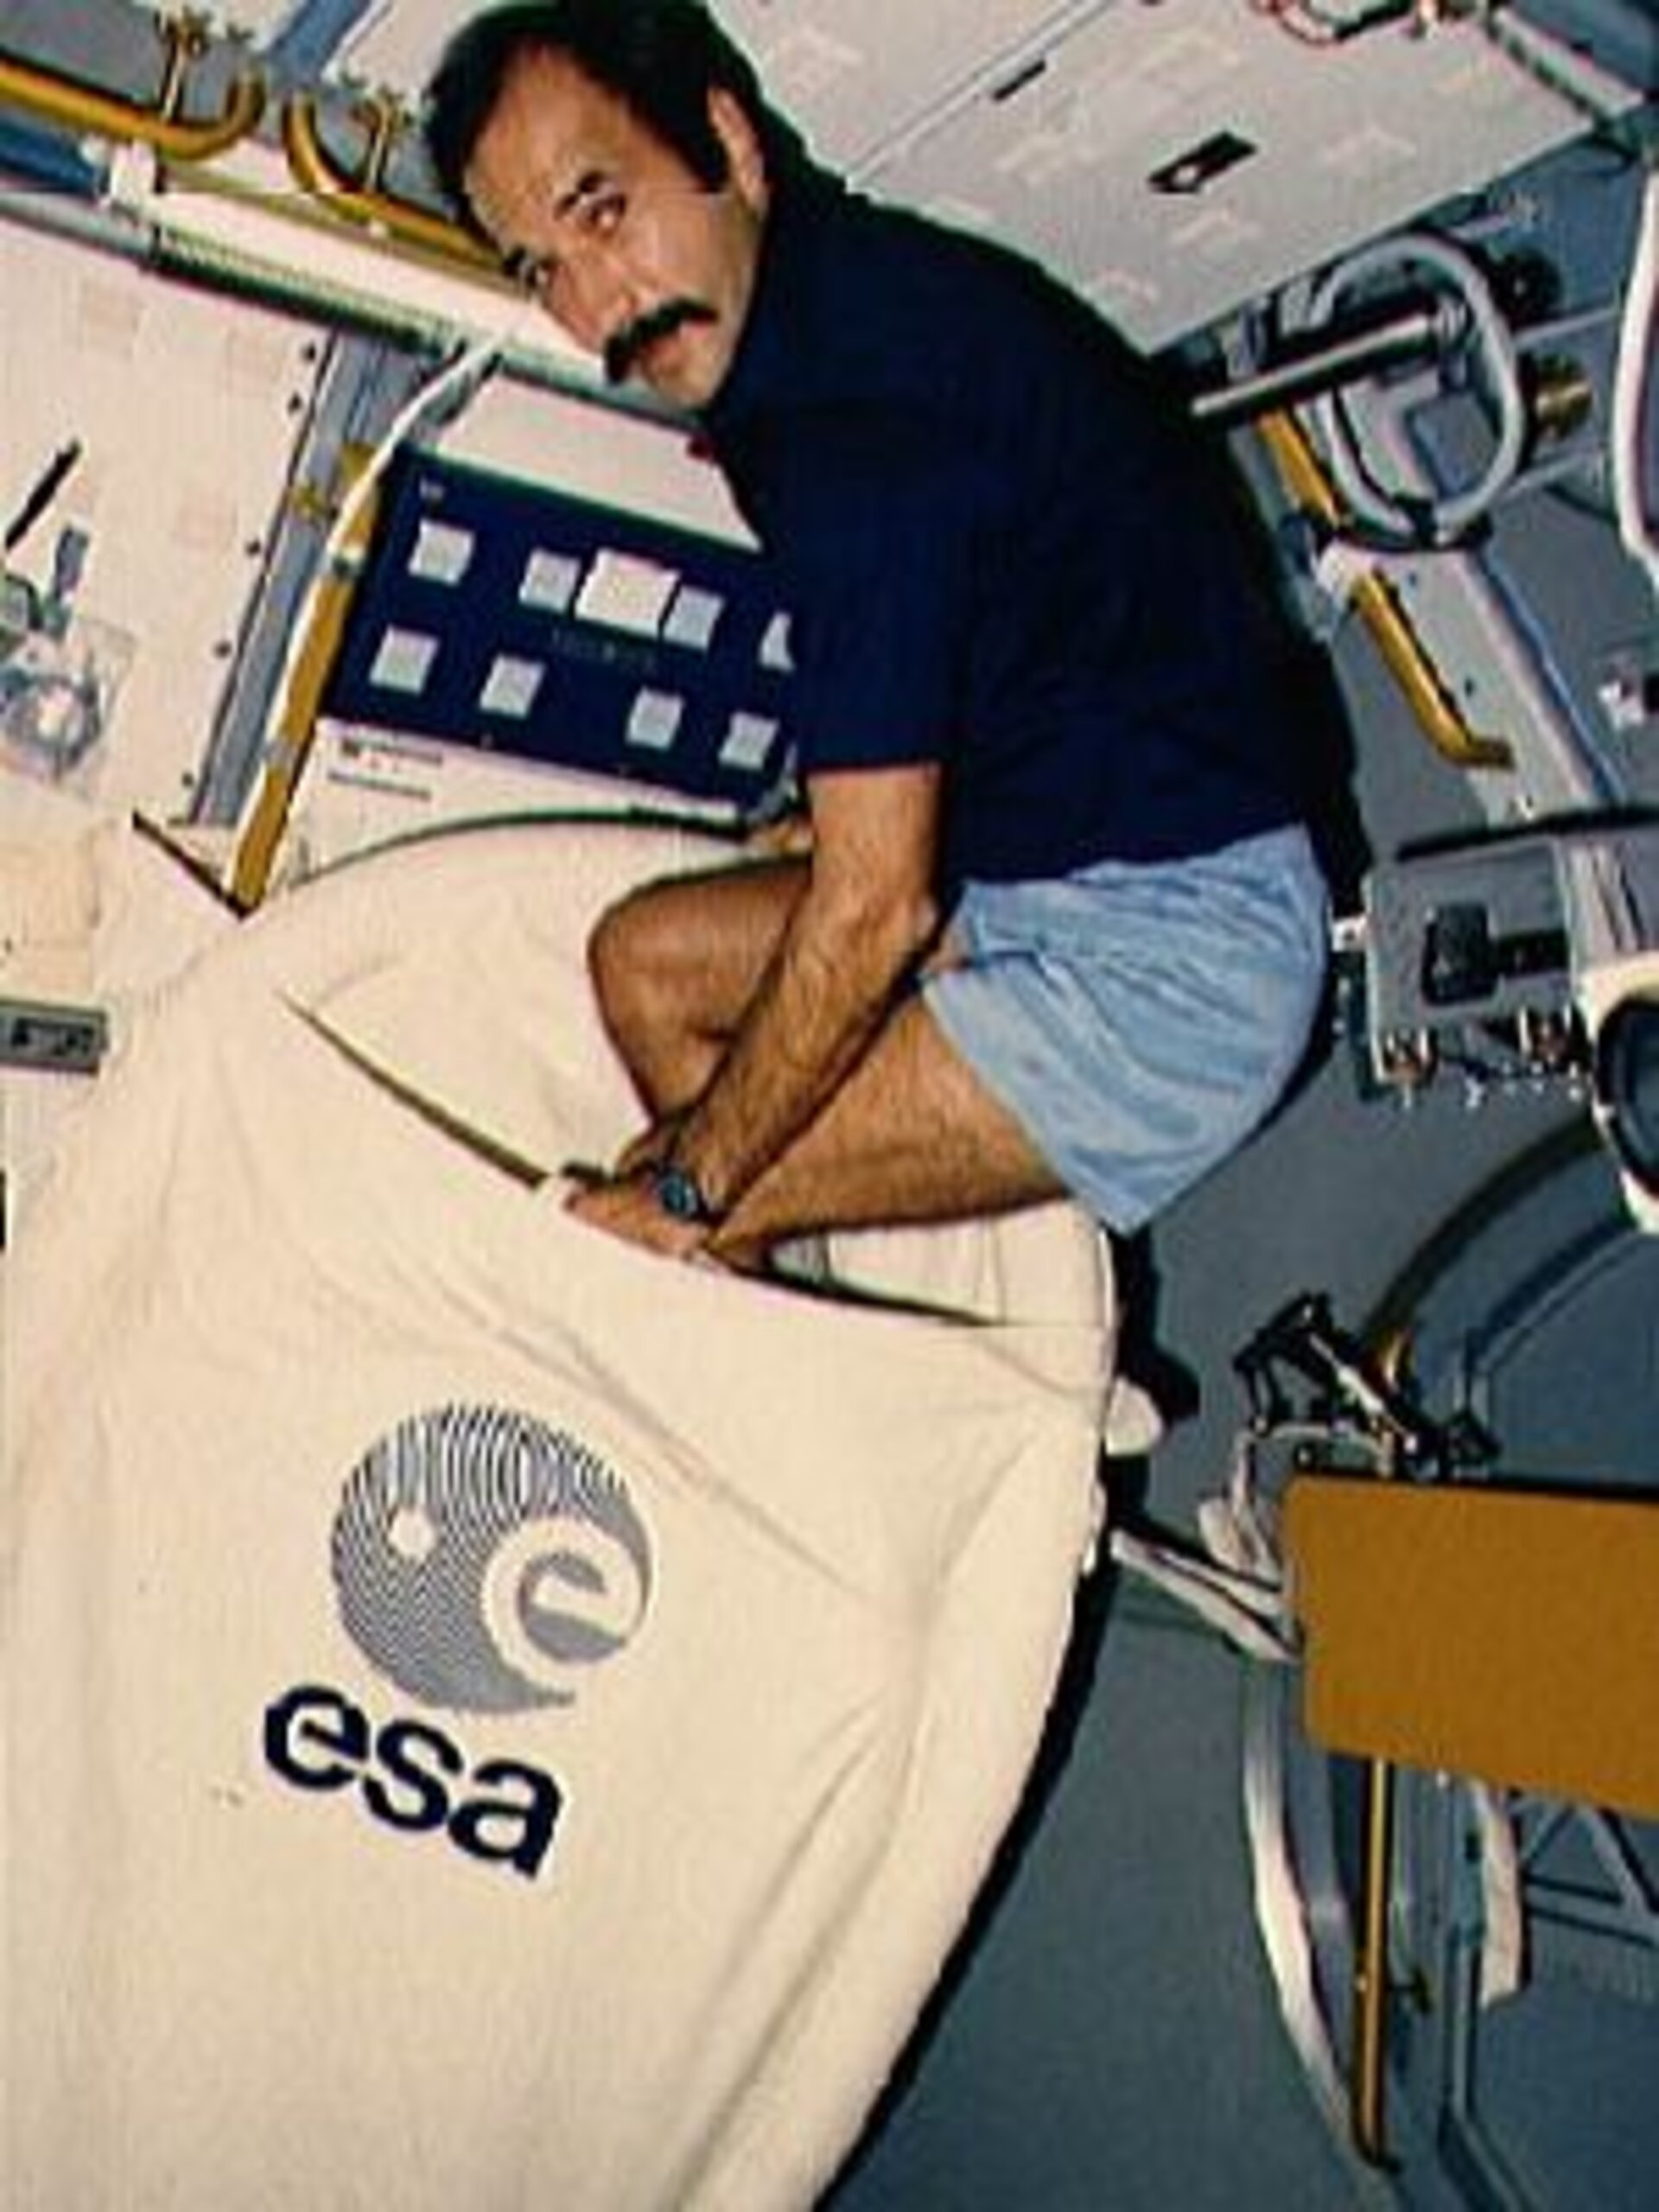 ESA - ESA astronaut Wubbo Ockels getting ready to sleep